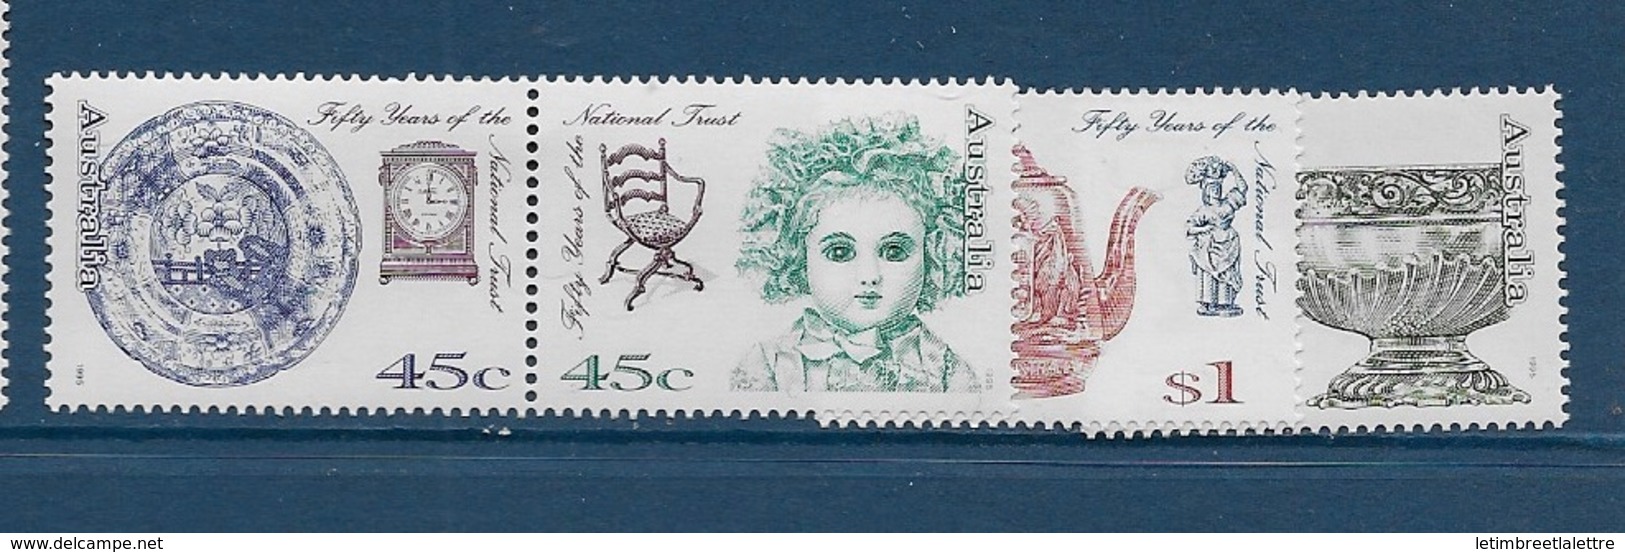 Australie N°1425 à 1428** - Mint Stamps